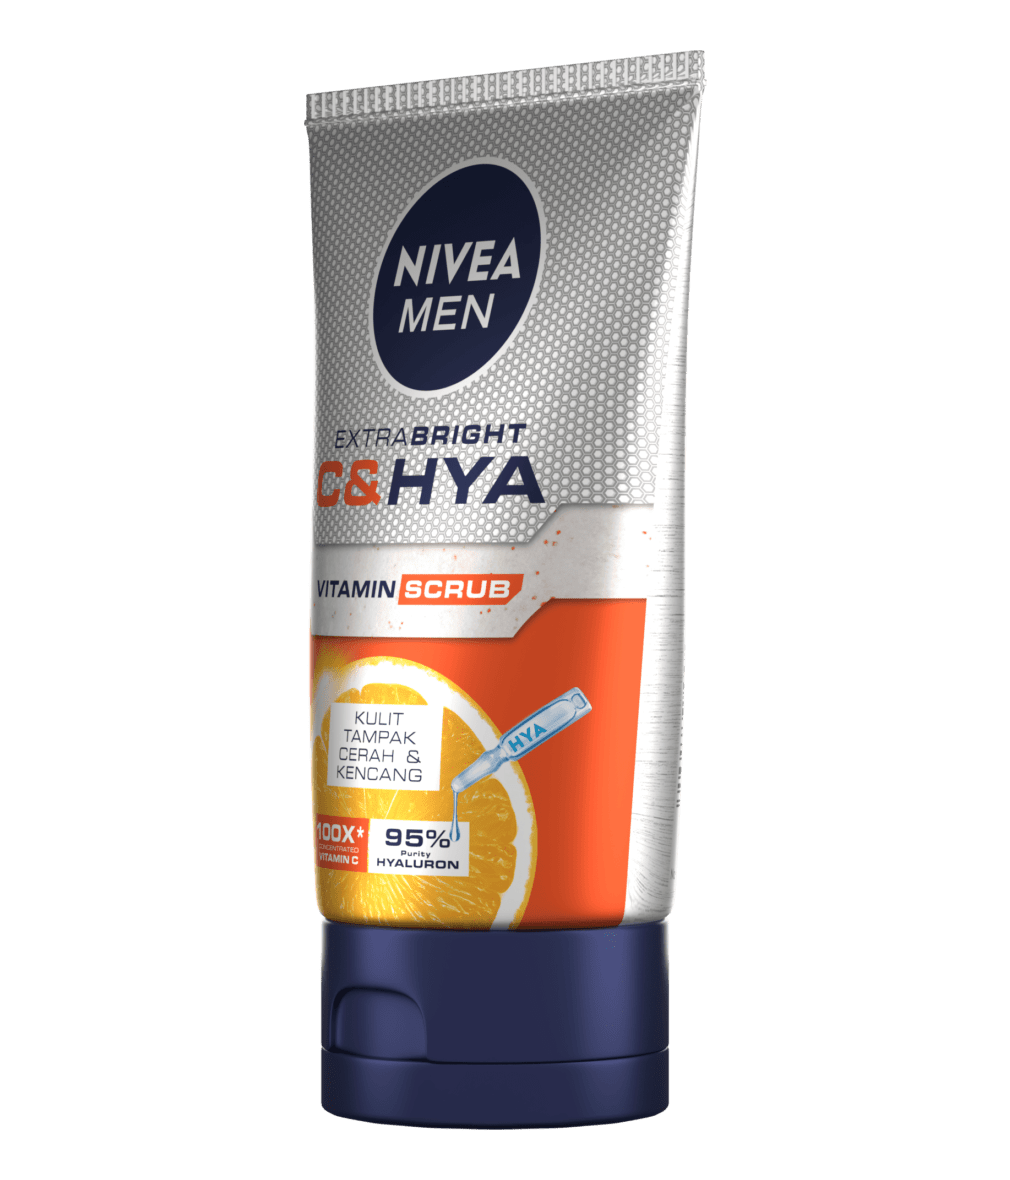 NIVEA MEN Vitamin Scrub Packshot